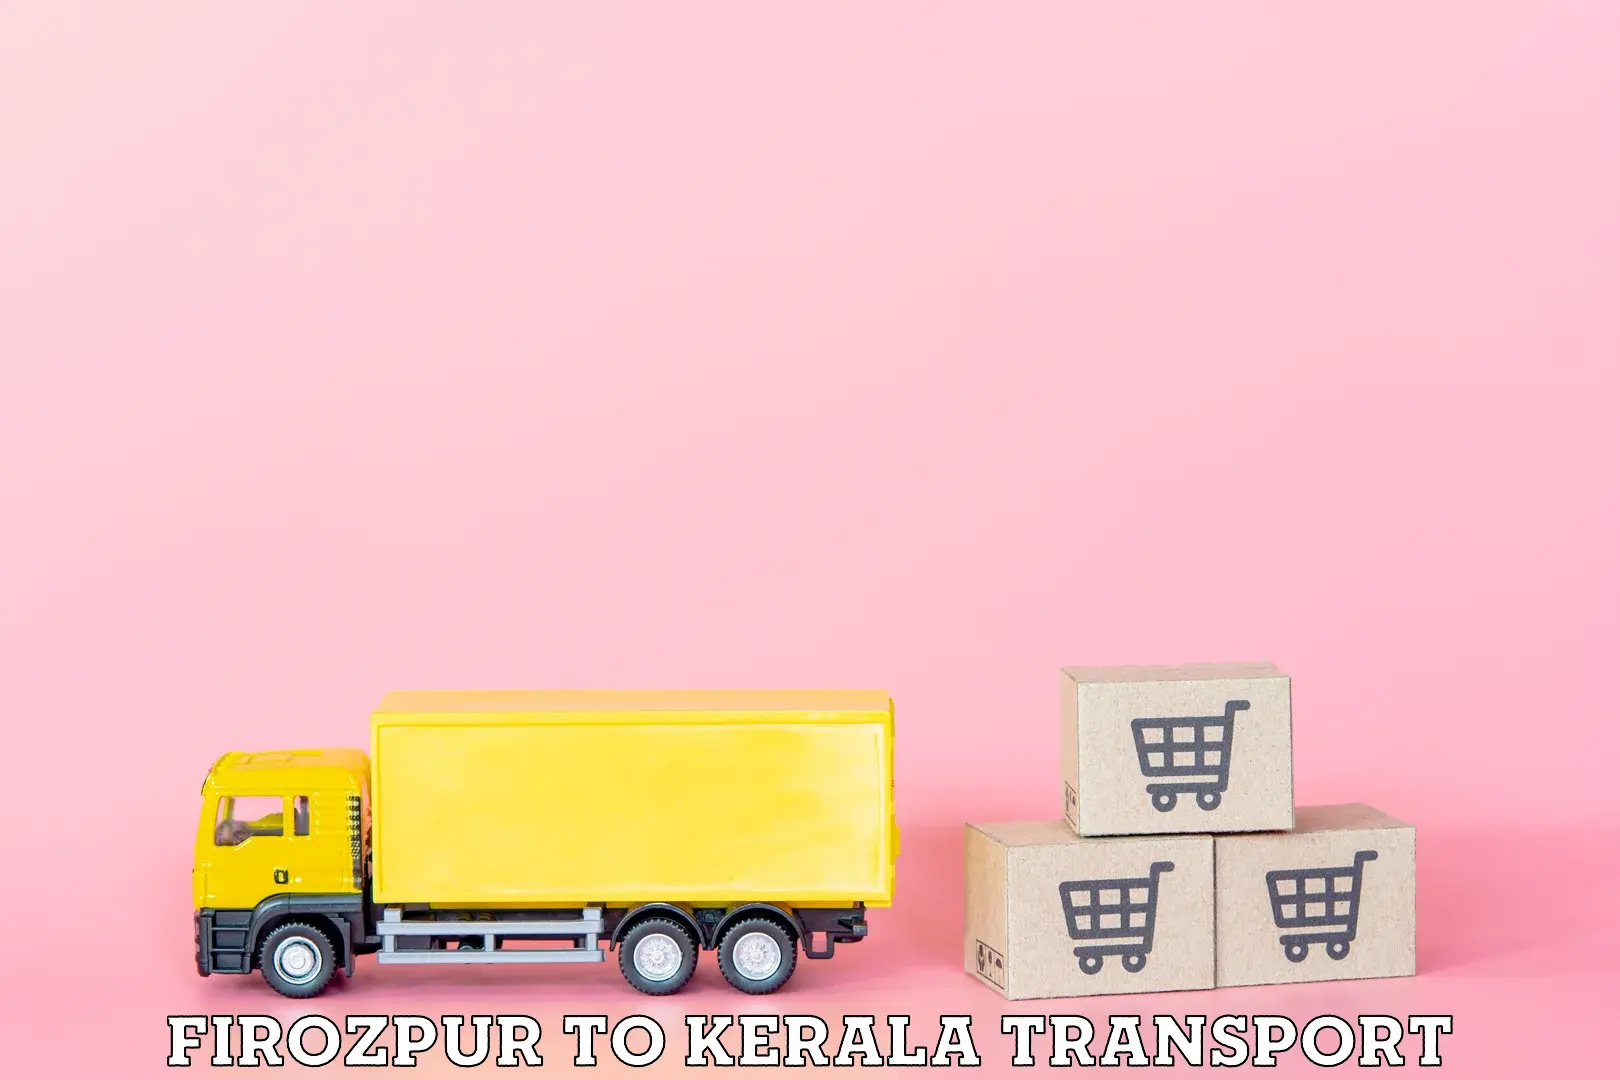 Express transport services Firozpur to Alathur Malabar